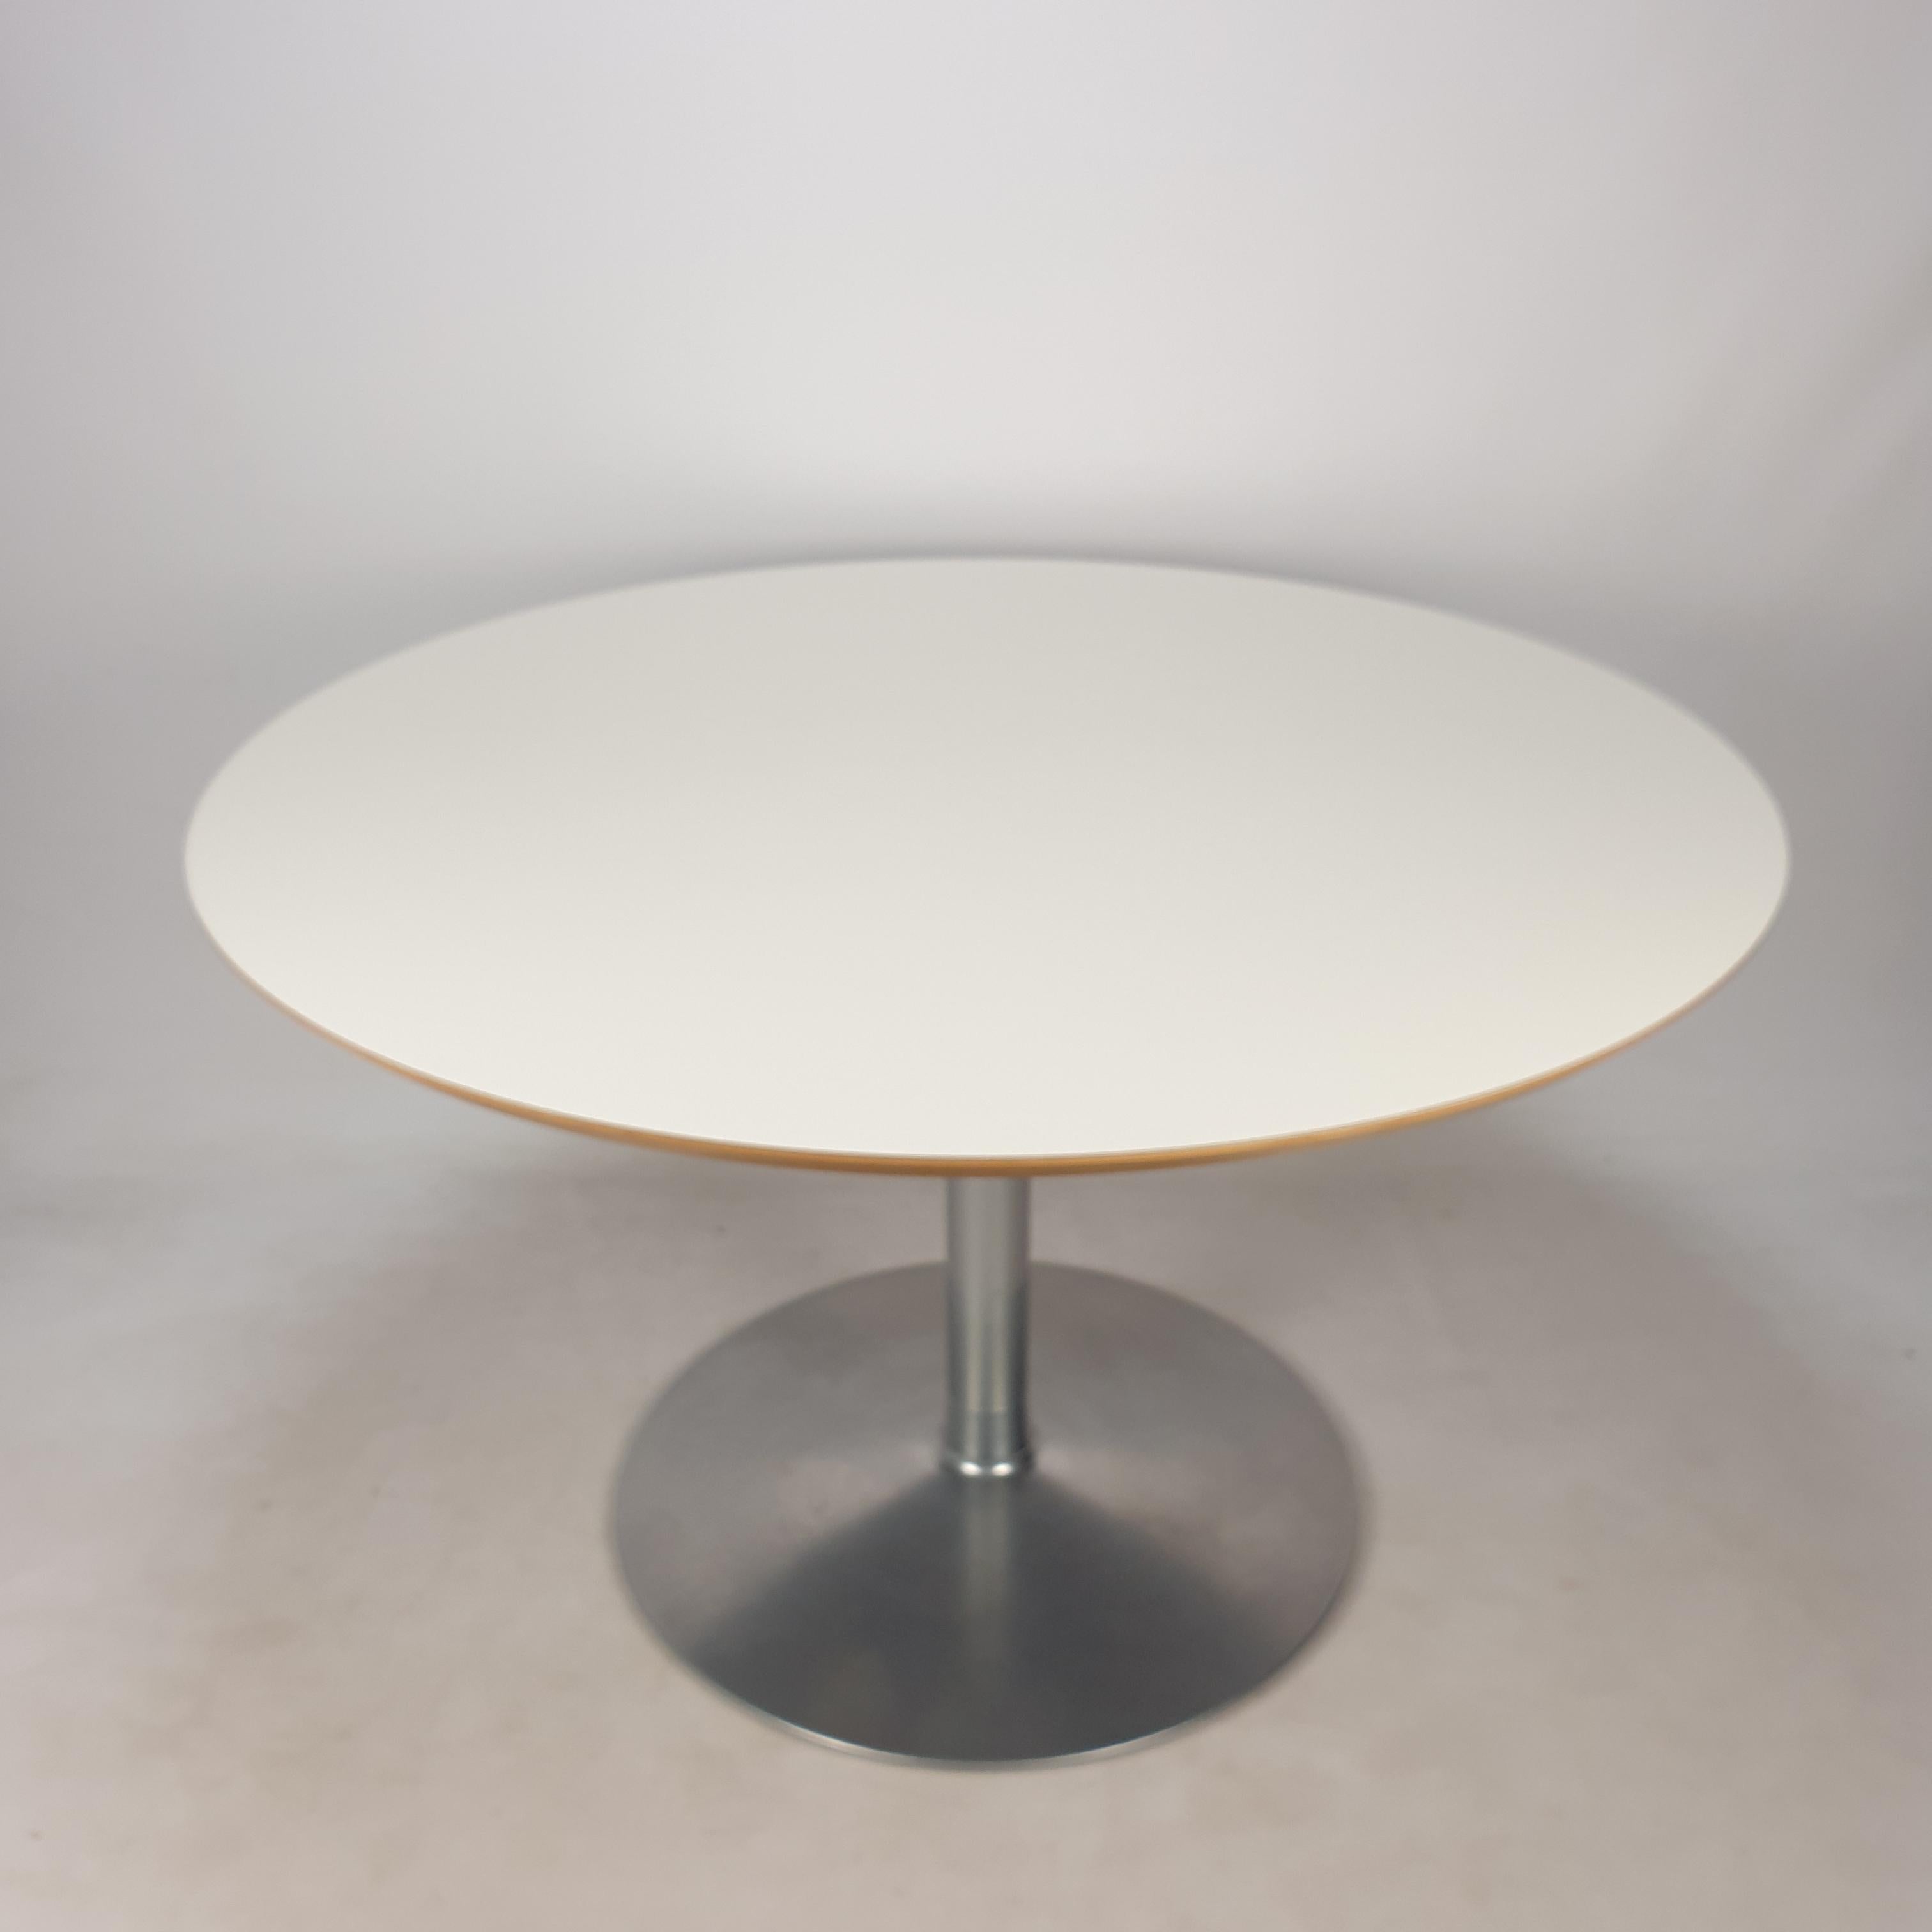 Très belle table ronde. 
Conçu par le célèbre Pierre Paulin dans les années 60 pour Artifort. 

Pied très stable avec un plateau en bois plaqué blanc. 

La table est en très bon état avec les traces normales d'utilisation (voir les photos).

Nous